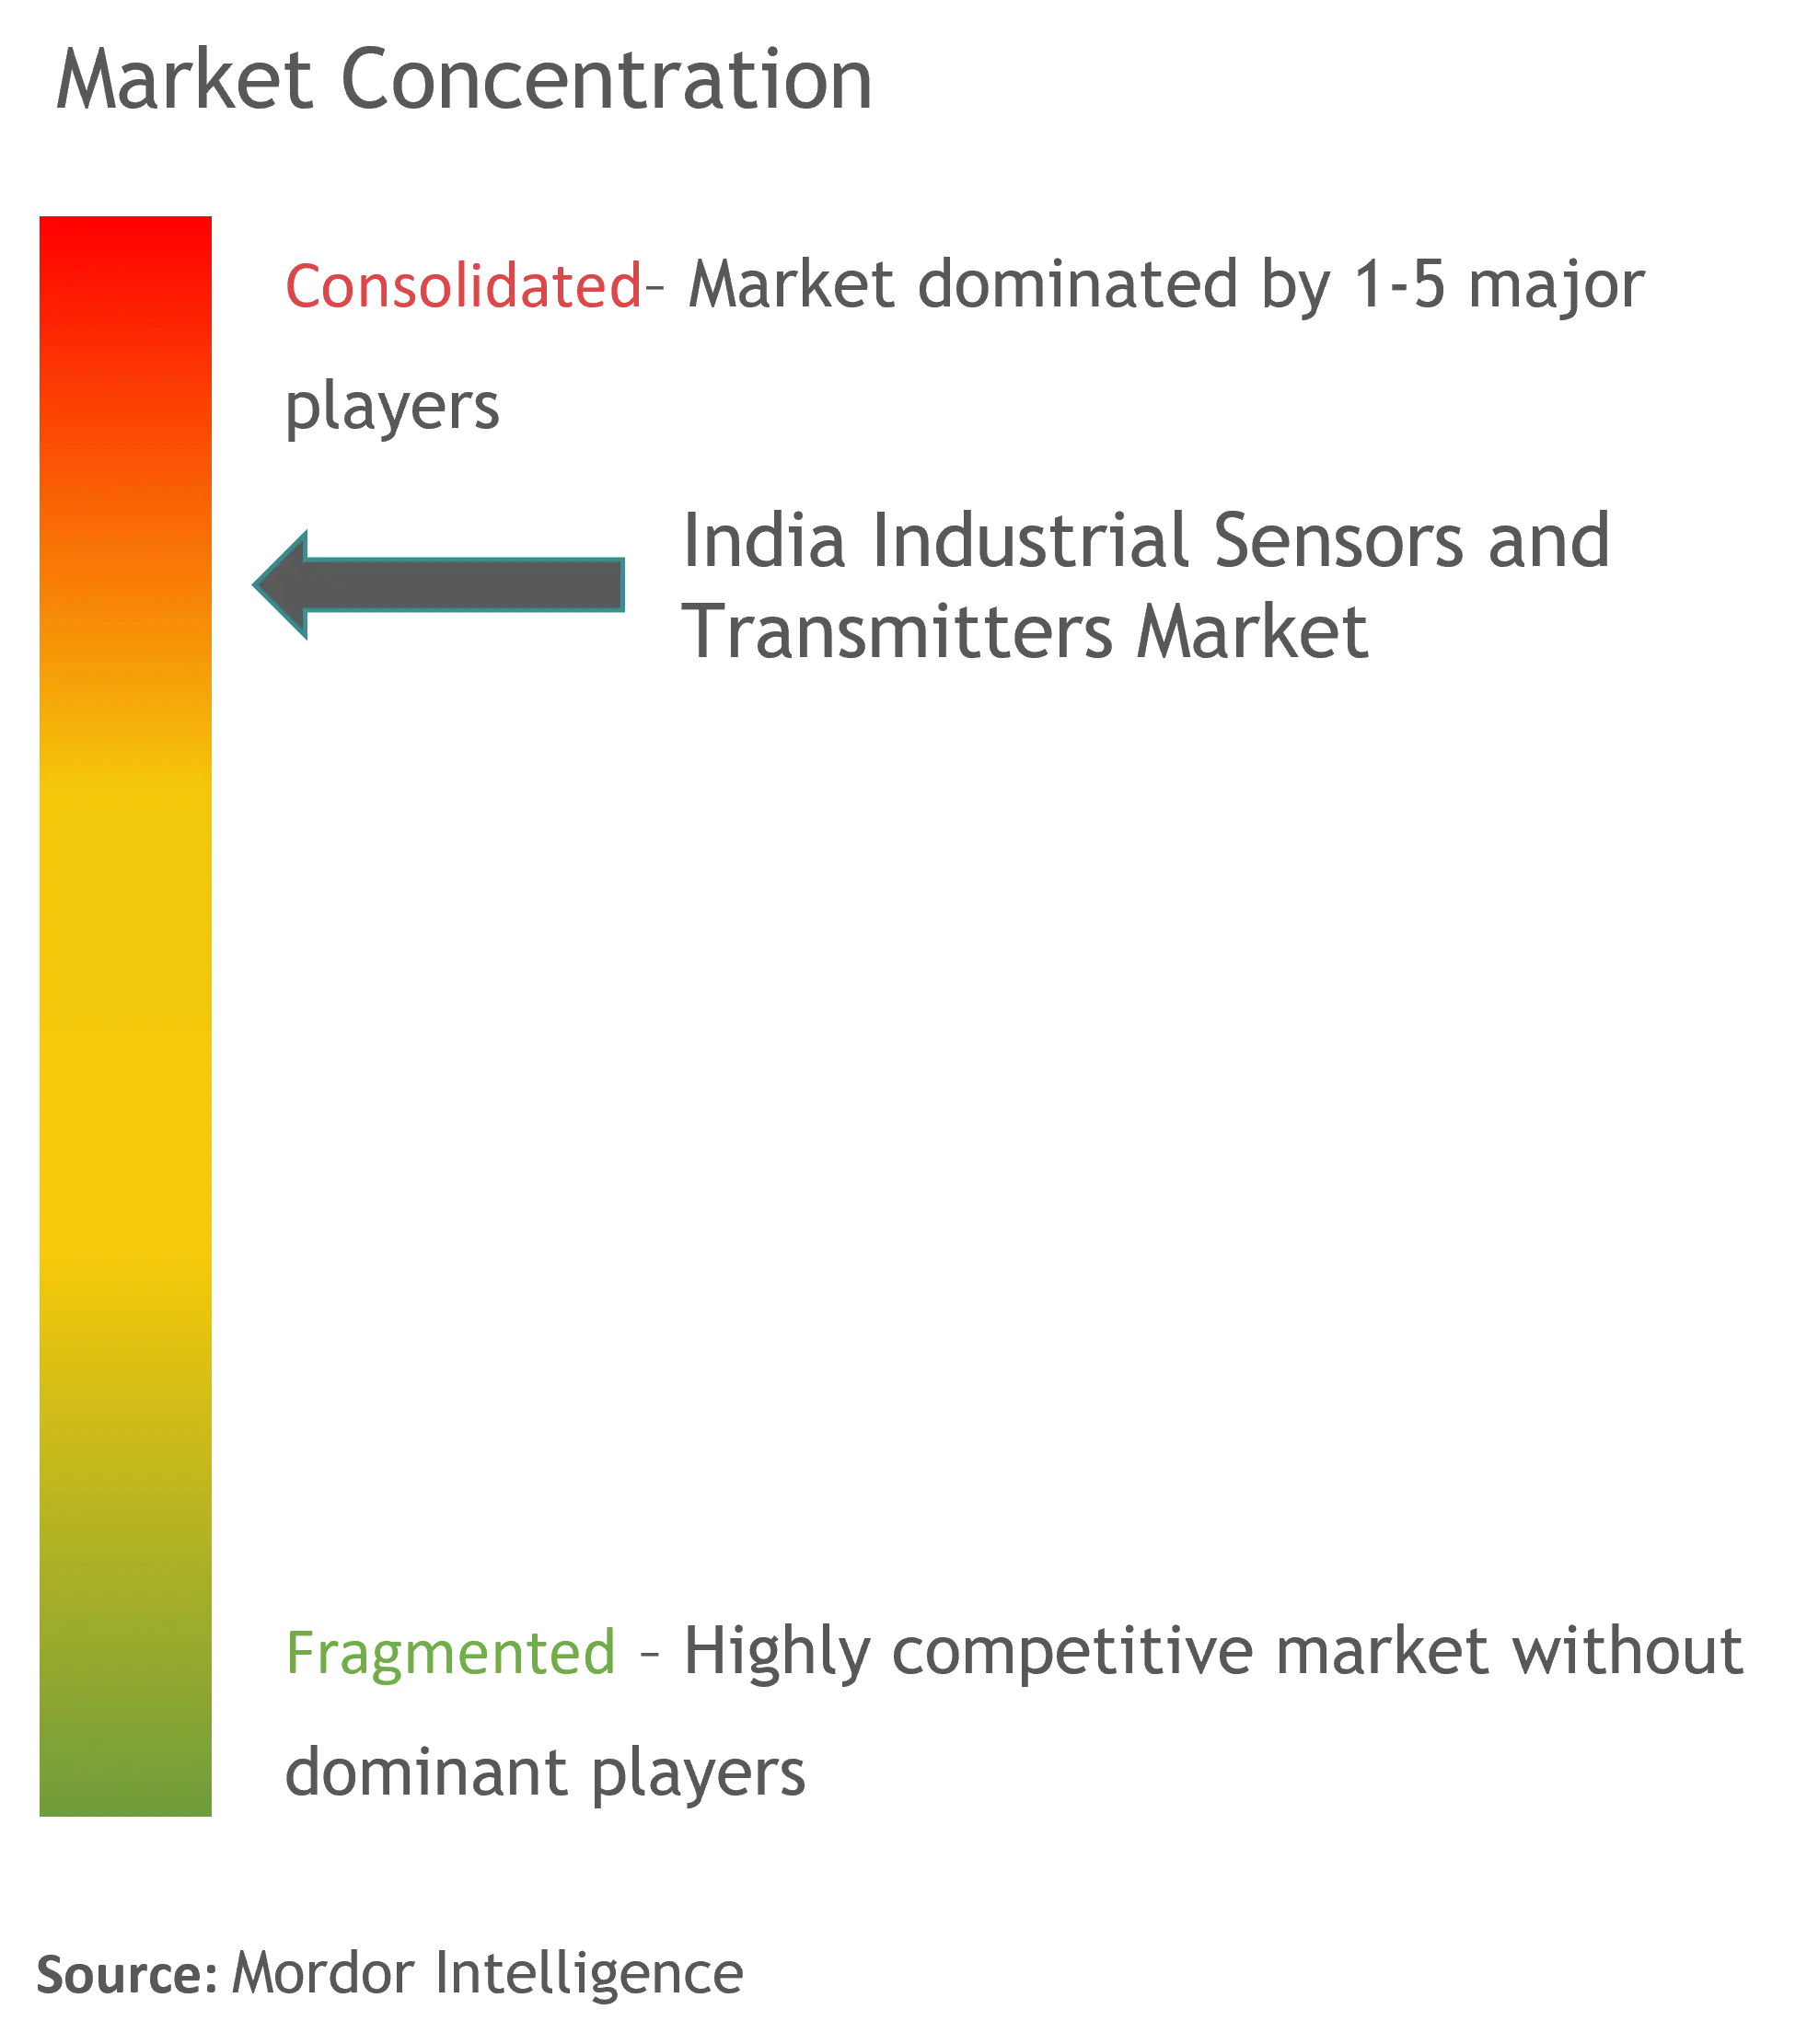 India Sensores y transmisores industrialesConcentración del Mercado